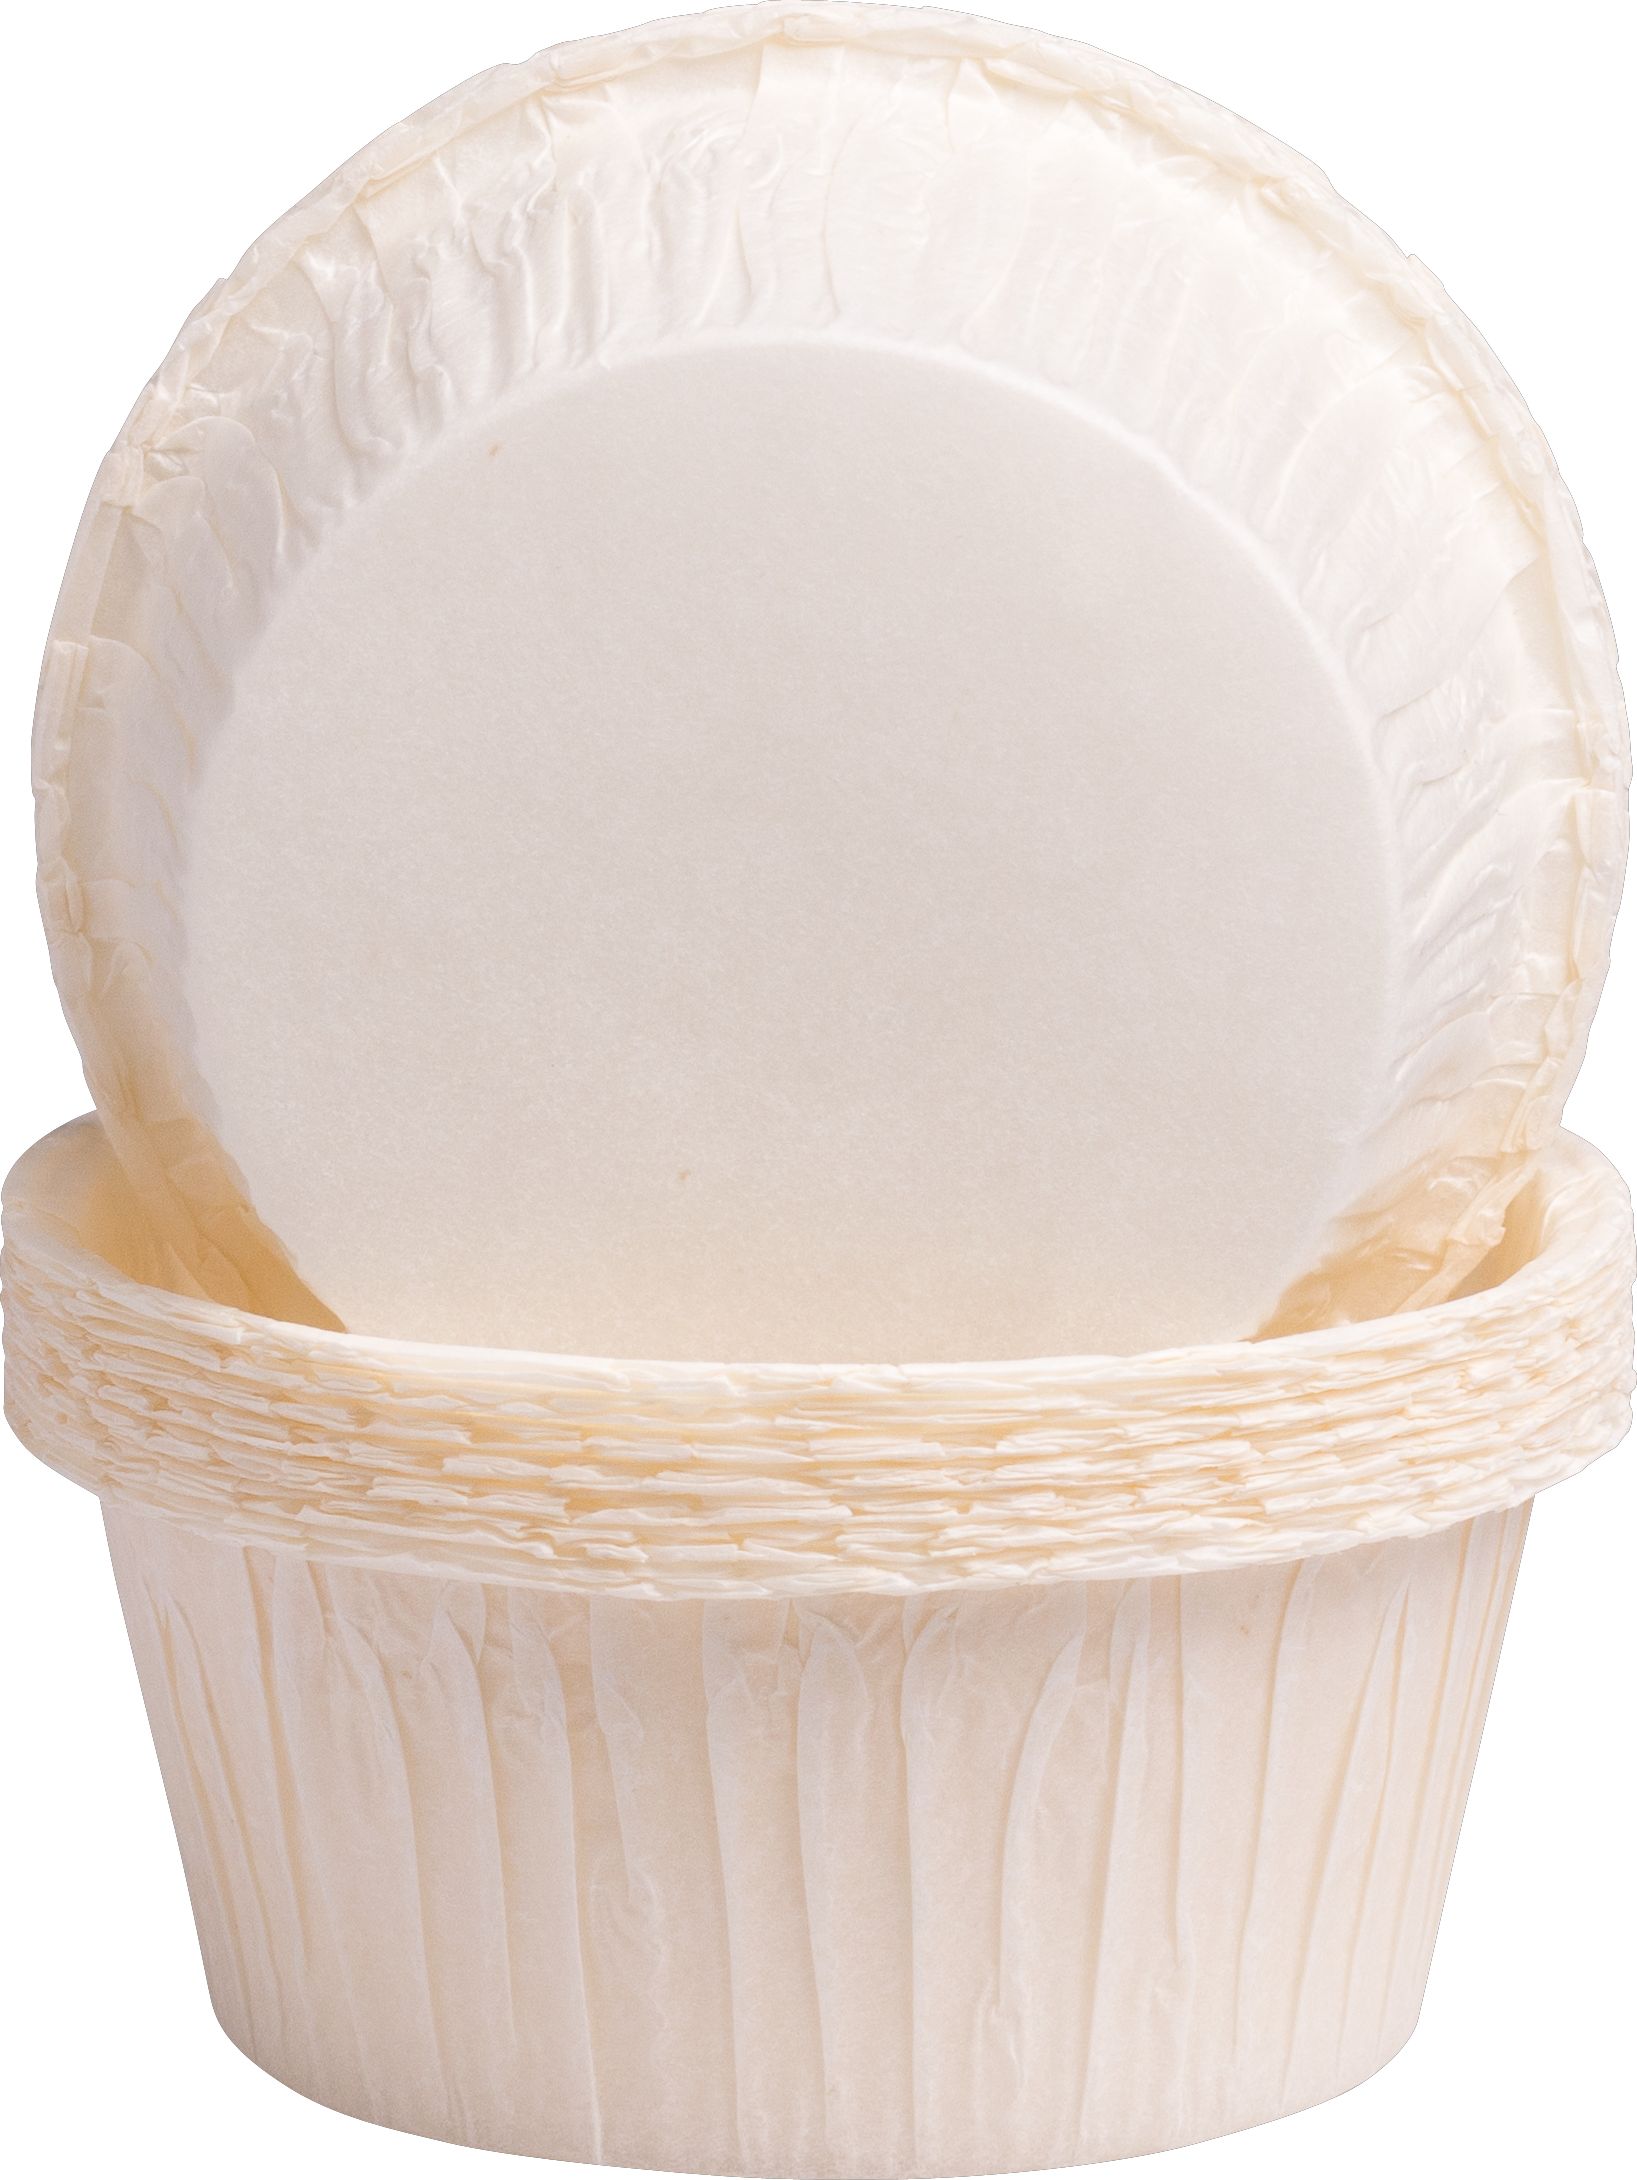 Muffinbackförmchen Weiß - 20 Stück, 5 x 3,2 cm